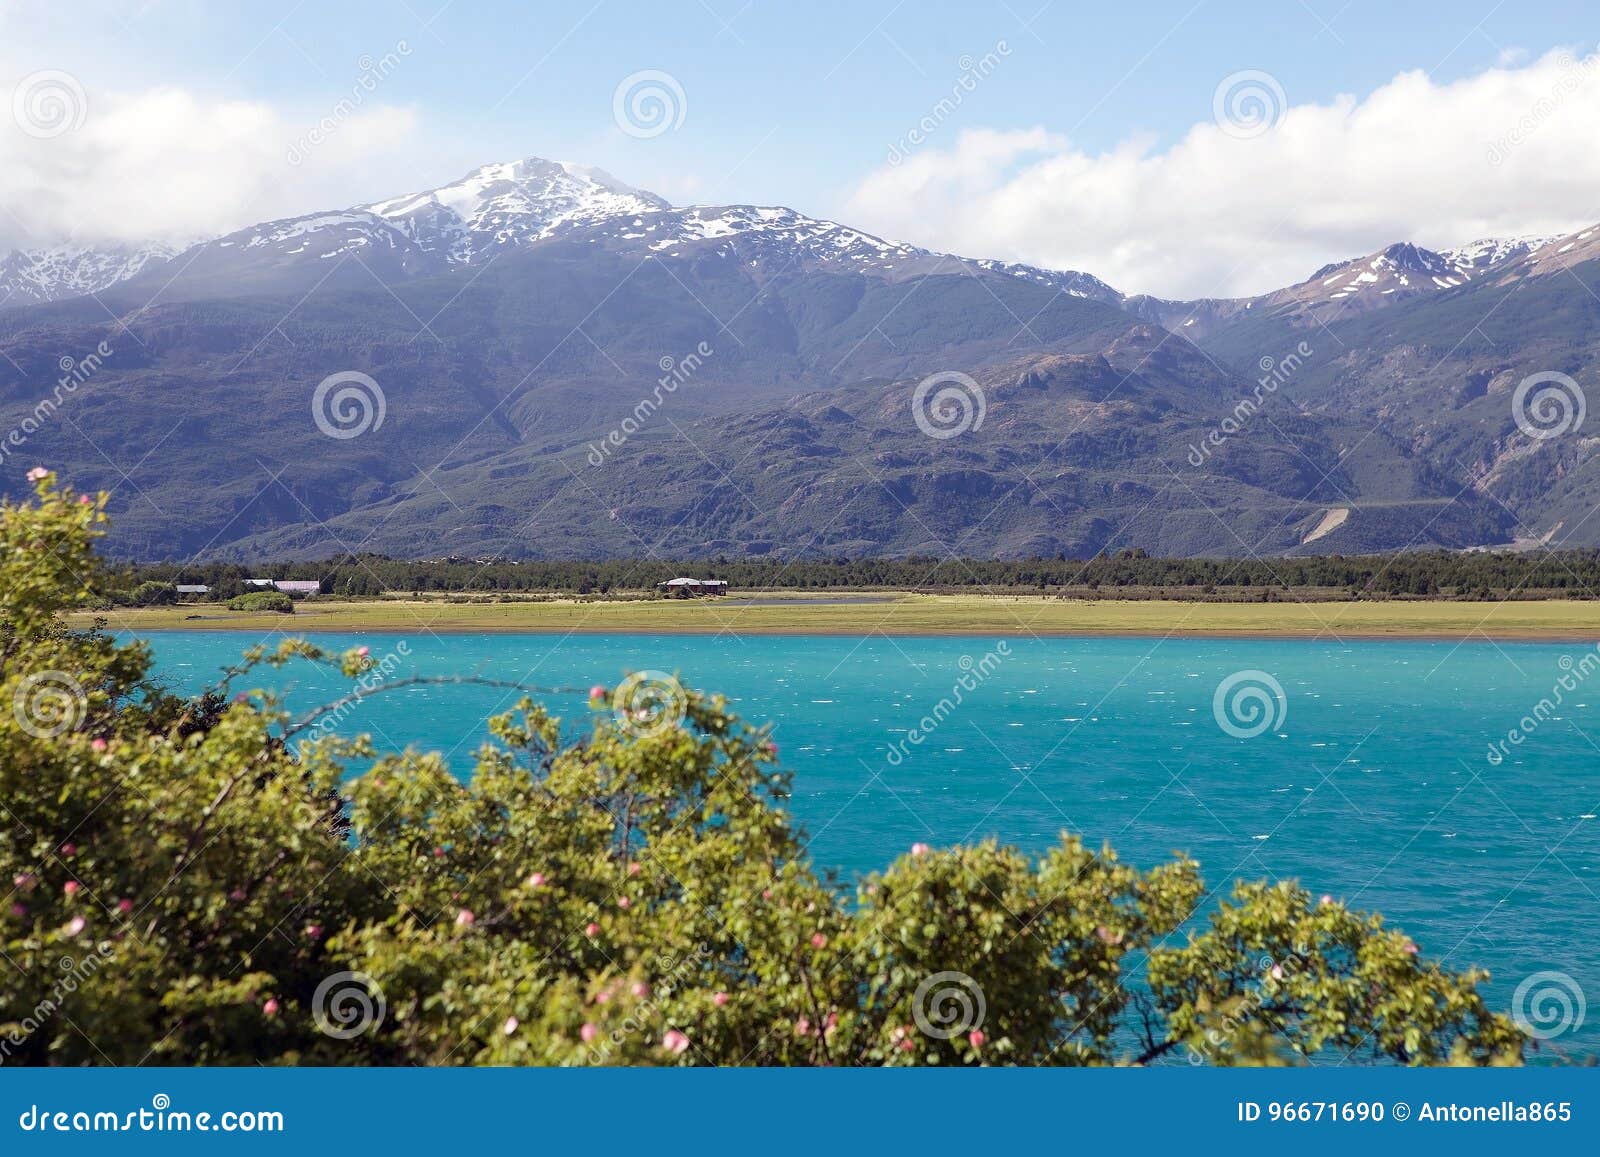 general carrera lake in patagonia, chile